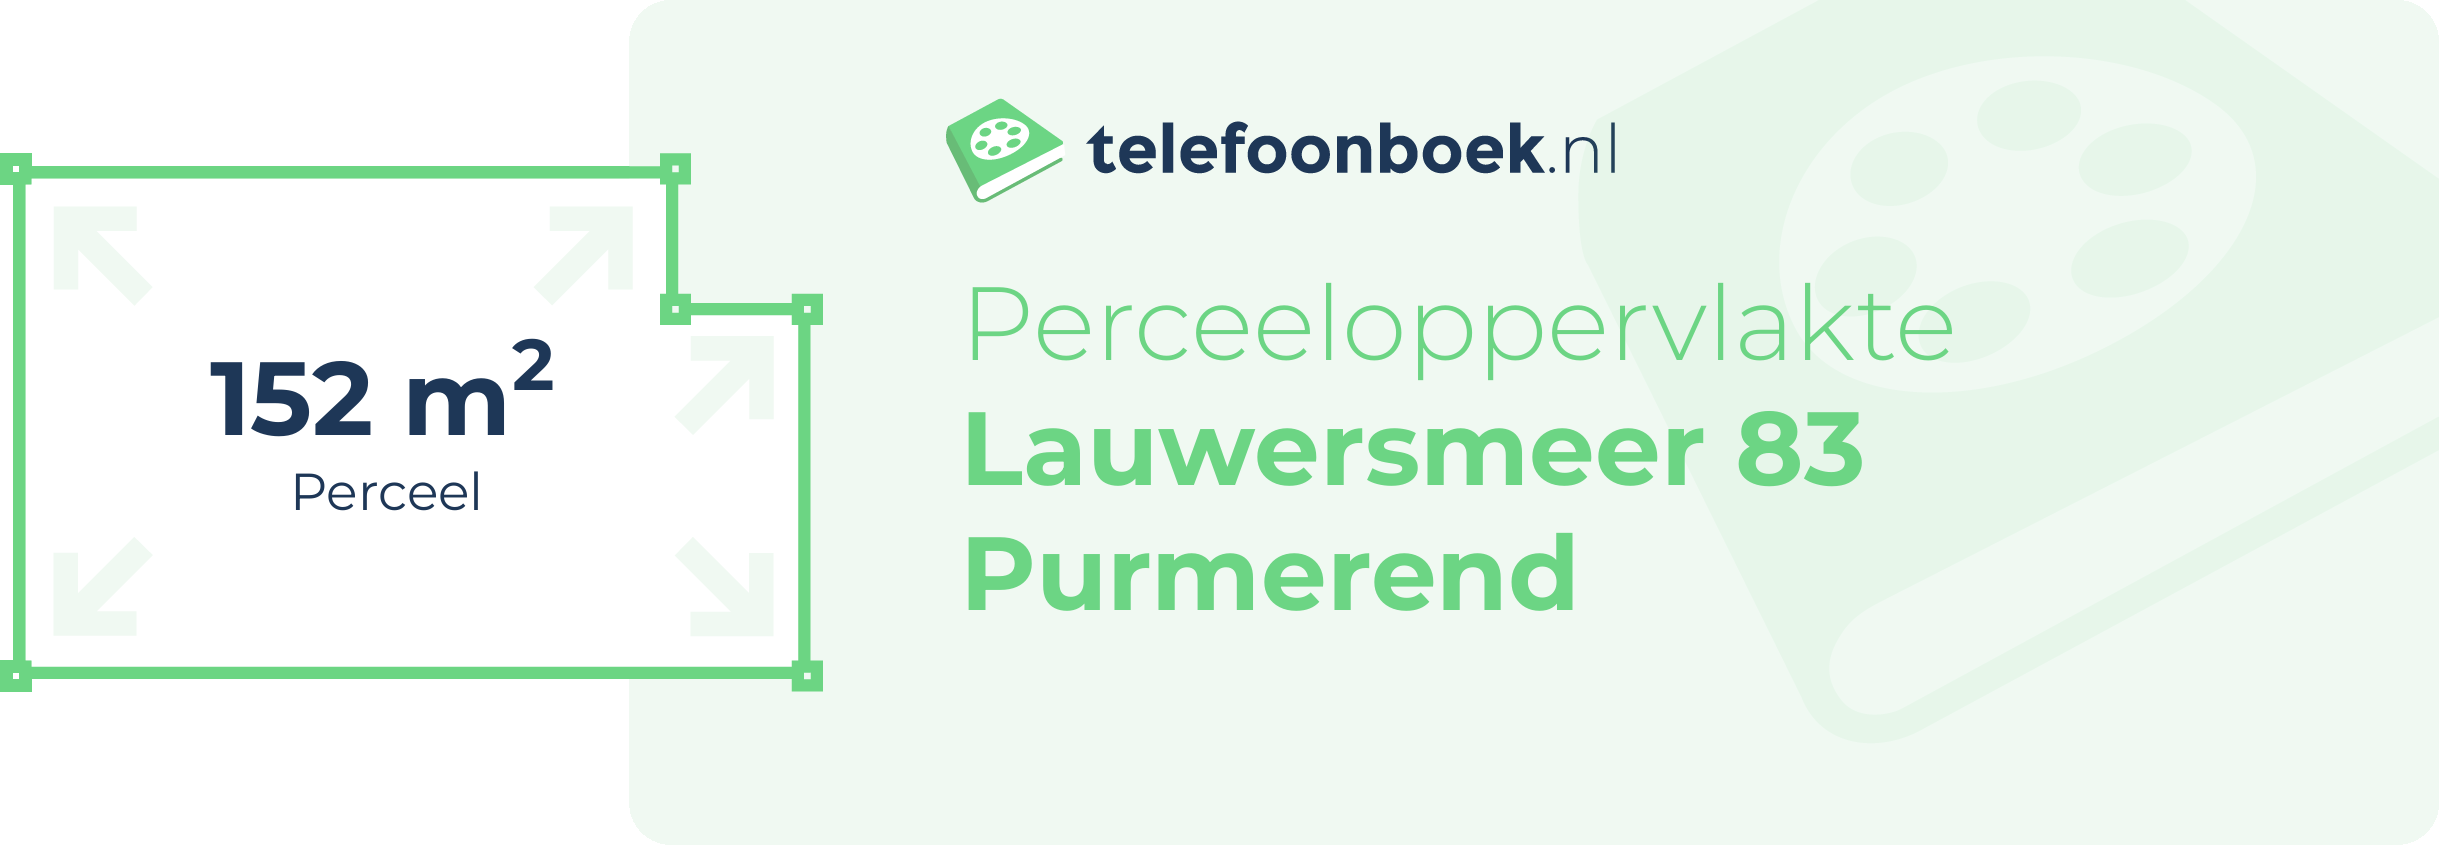 Perceeloppervlakte Lauwersmeer 83 Purmerend